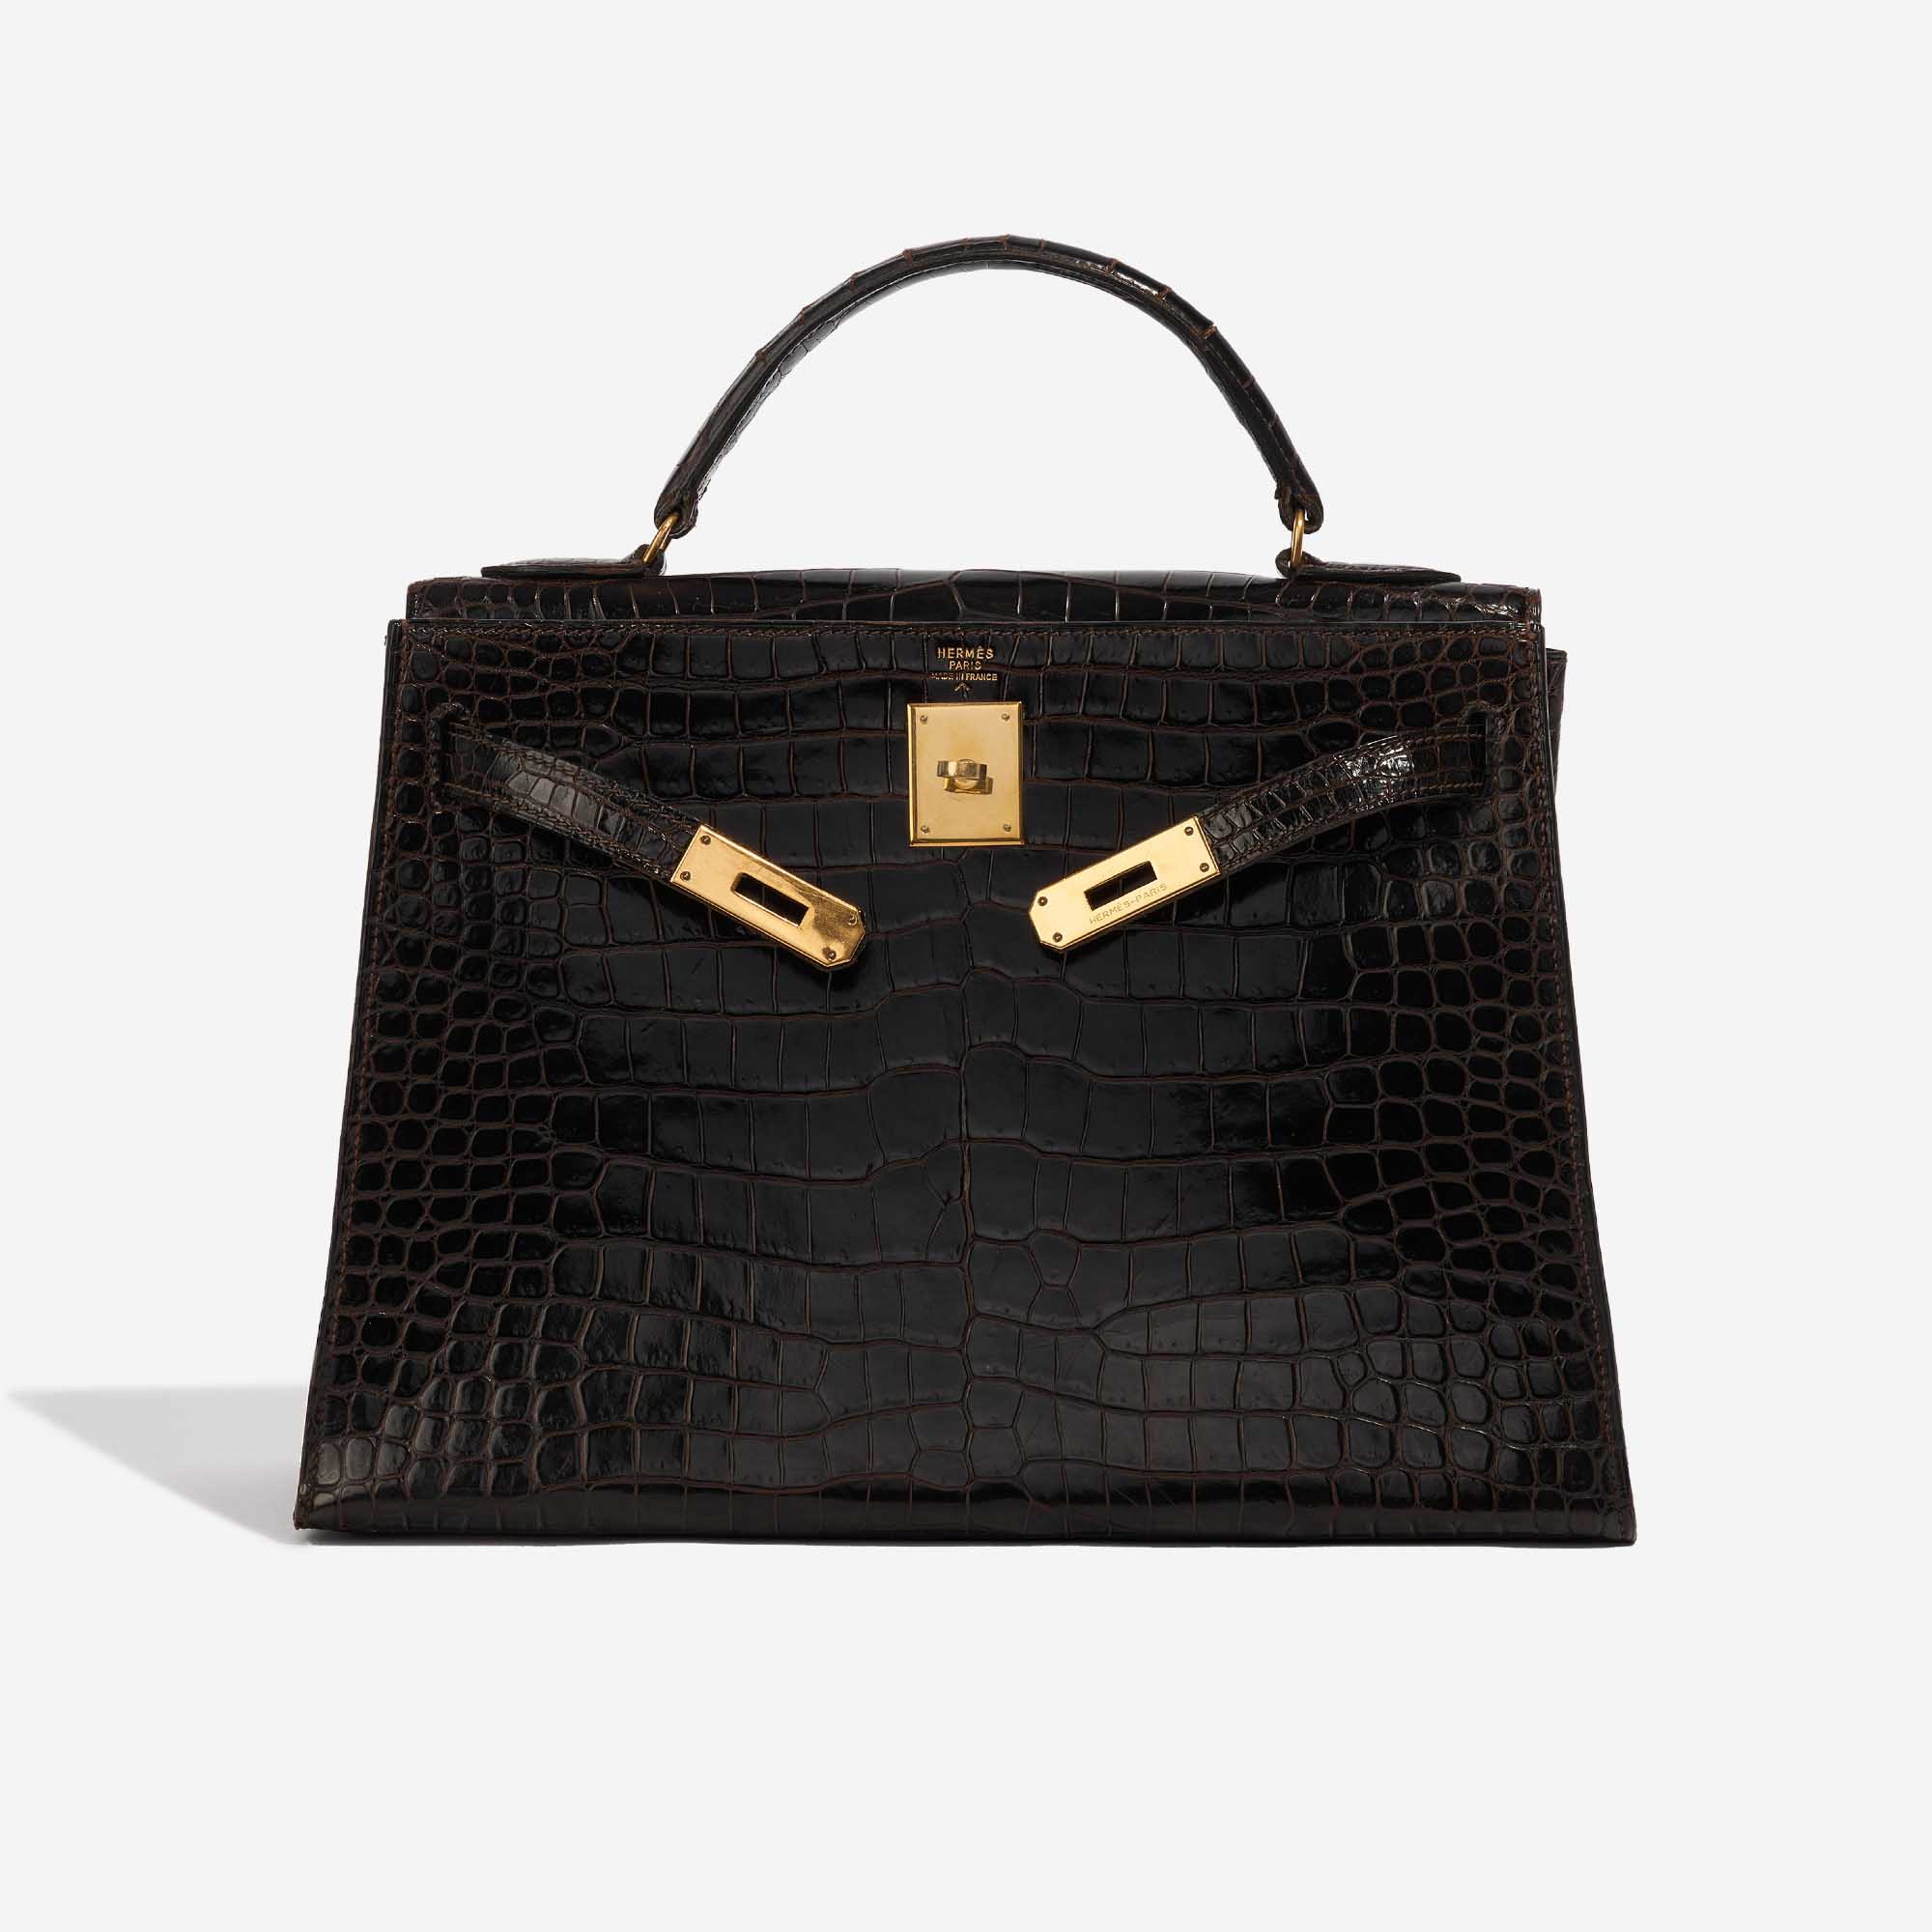 Pre-owned Hermès Tasche Kelly 32 Porosus Crocodile Dark Brown Brown Front Open | Verkaufen Sie Ihre Designer-Tasche auf Saclab.com